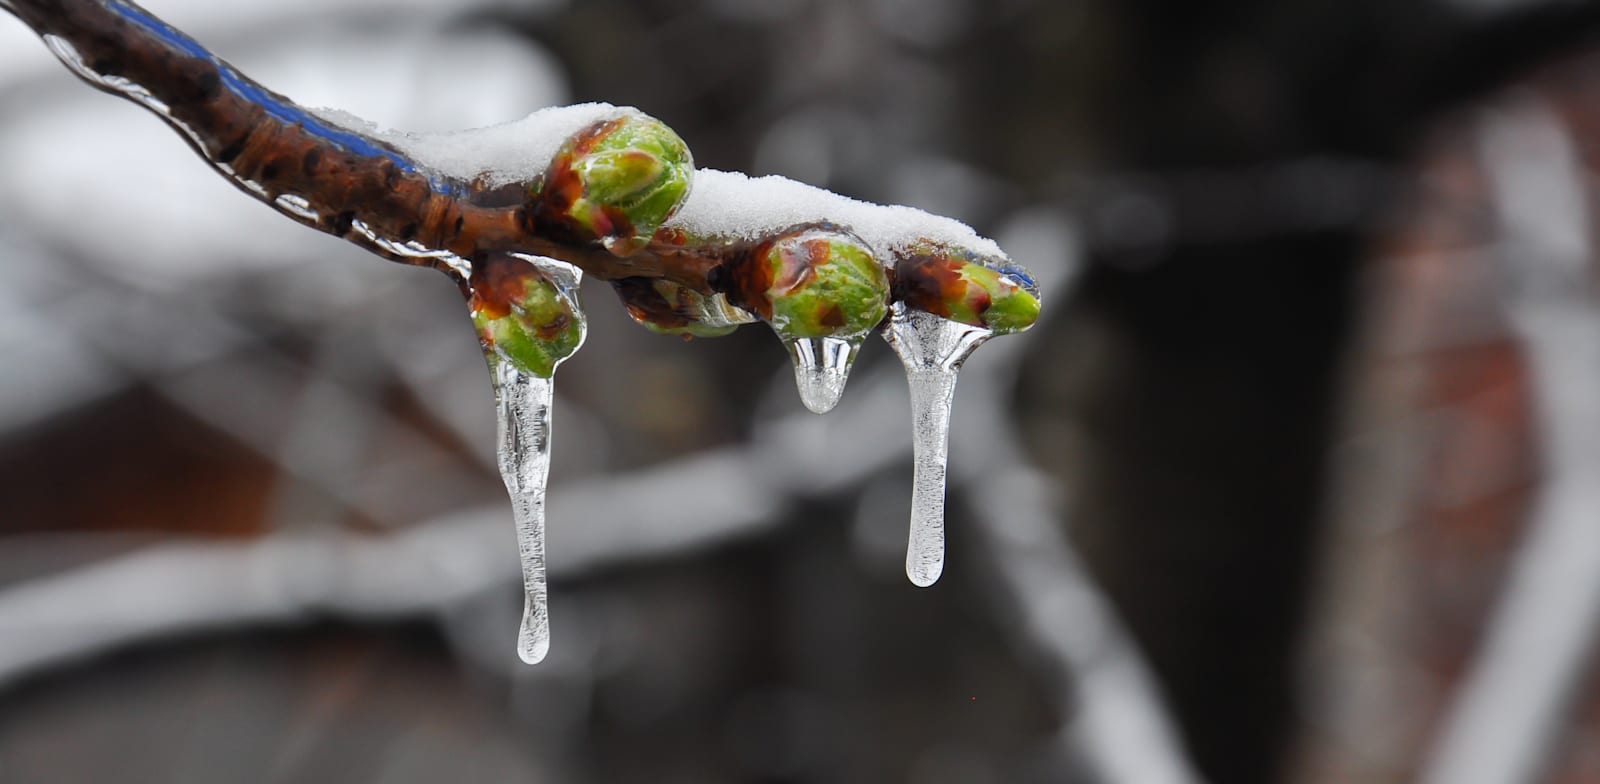 עונת 21-22 התאפיינה, בעיקר, בטמפרטורות נמוכות יחסית לממוצע הרב שנתי / צילום: Shutterstock, Ivan Marjanovic